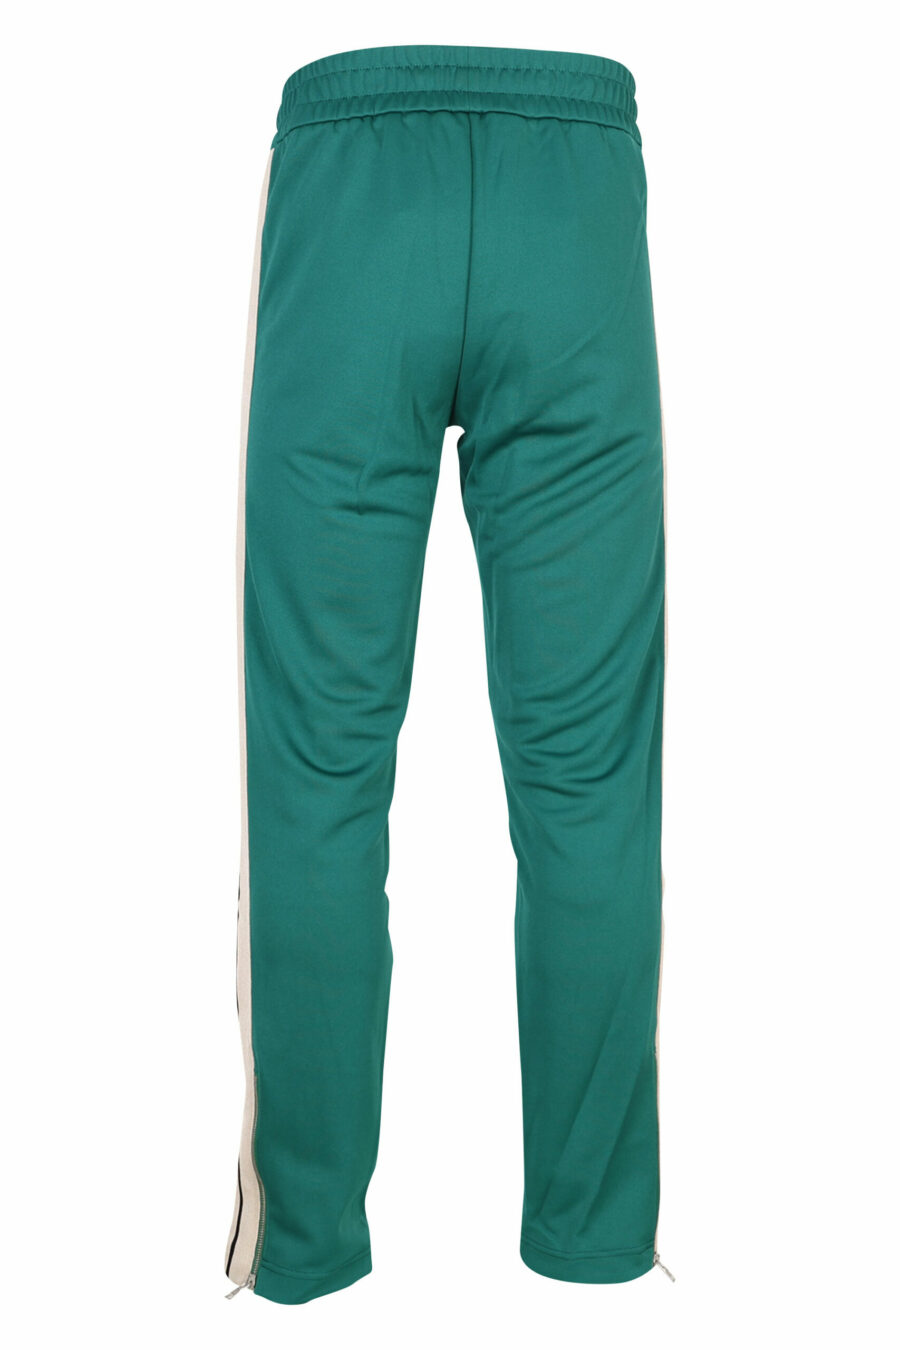 Pantalón de chándal verde con franjas blancas laterales - 8057151109306 2 scaled